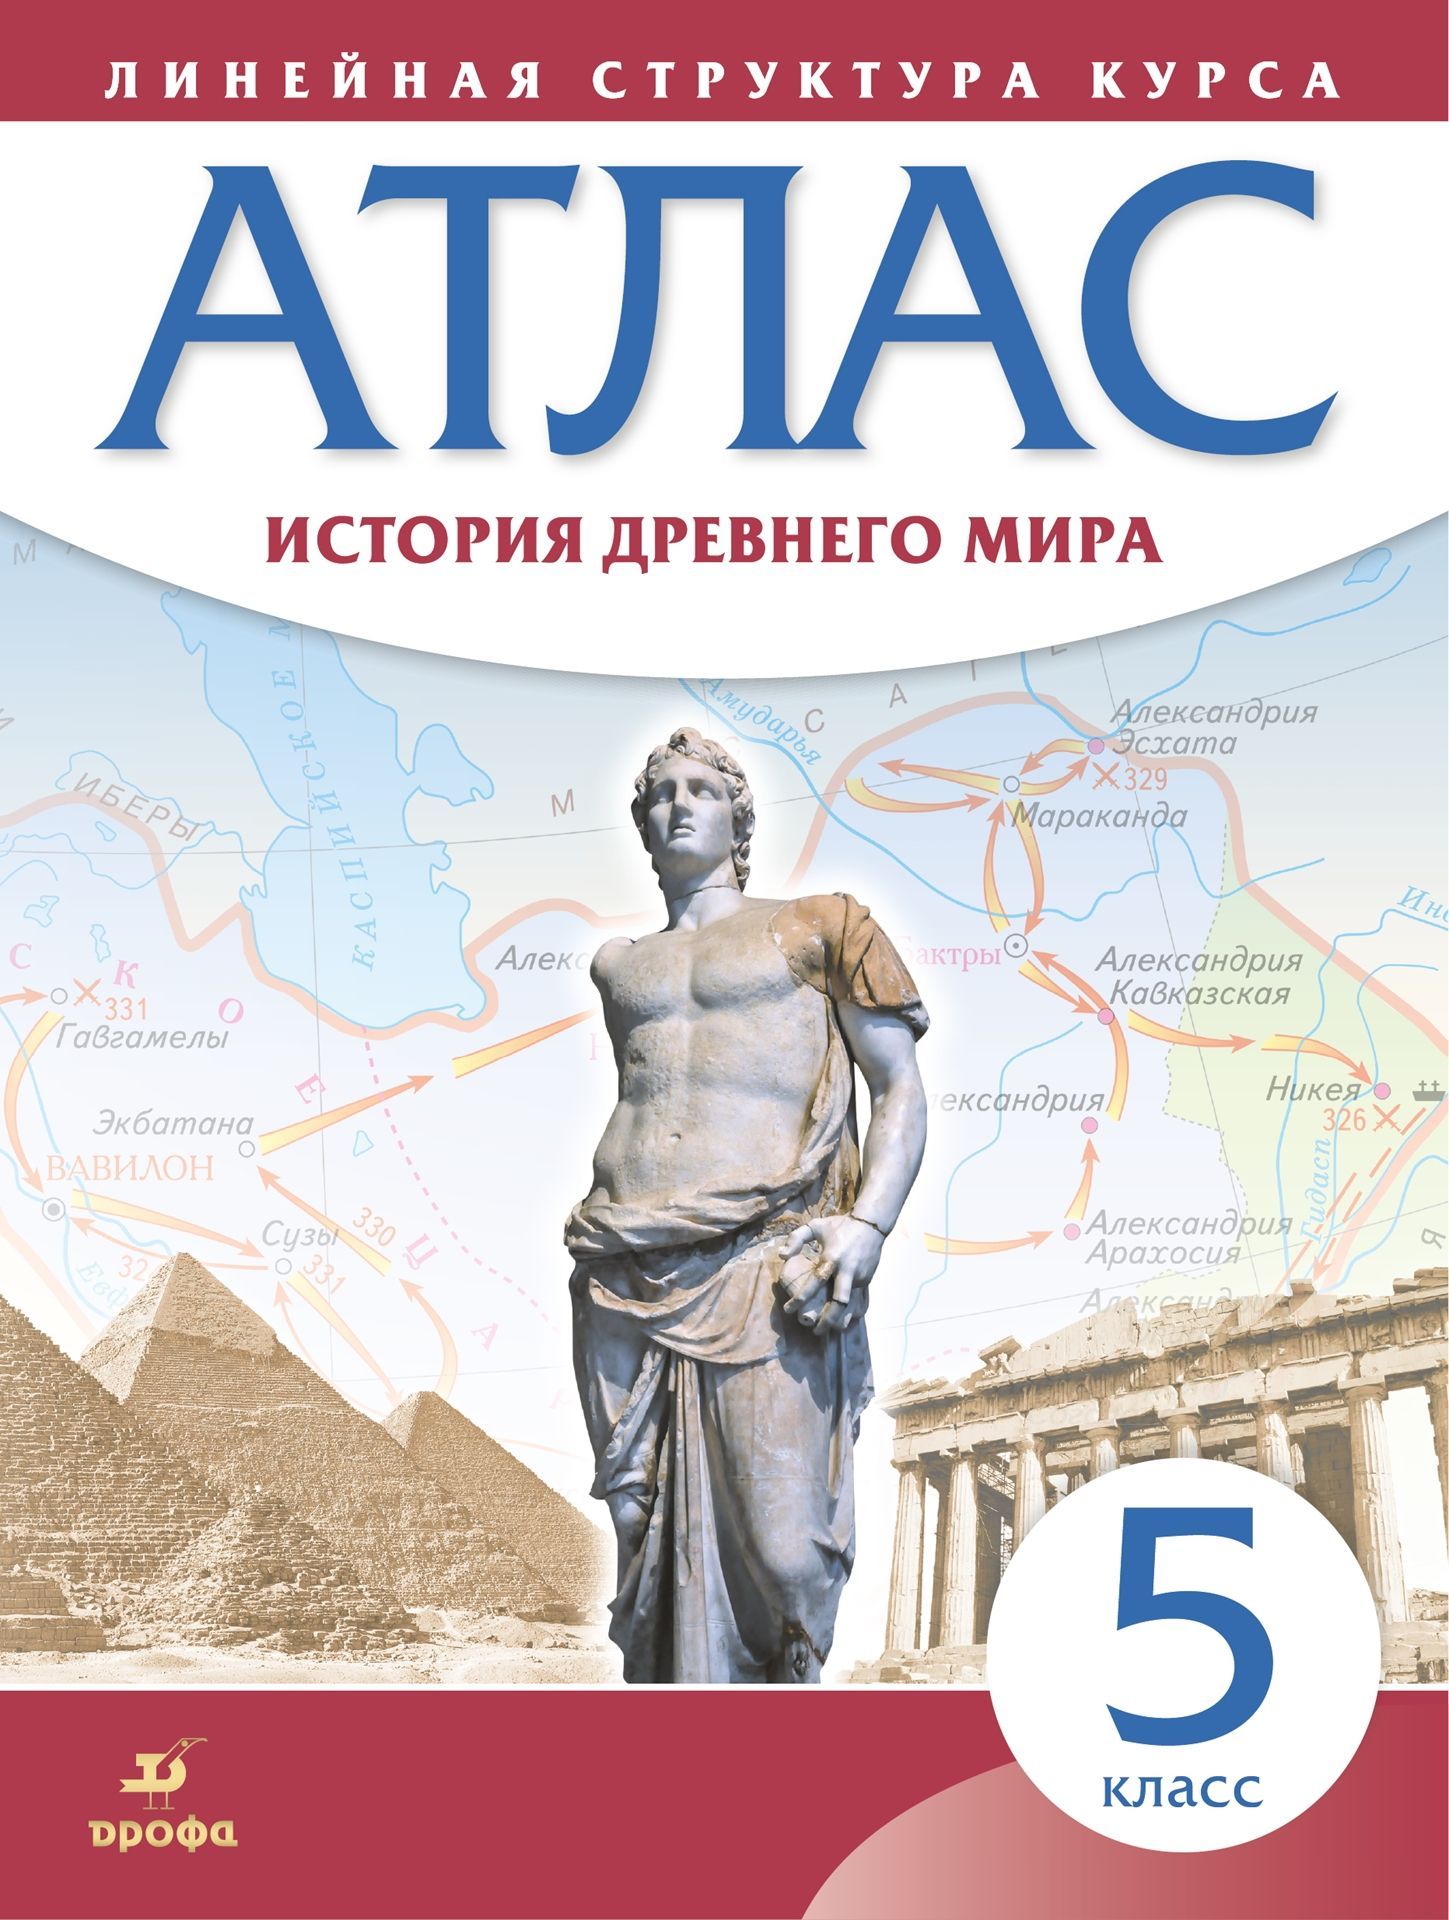 Атлас 5 класс: История древнего мира. Линейная структура курса